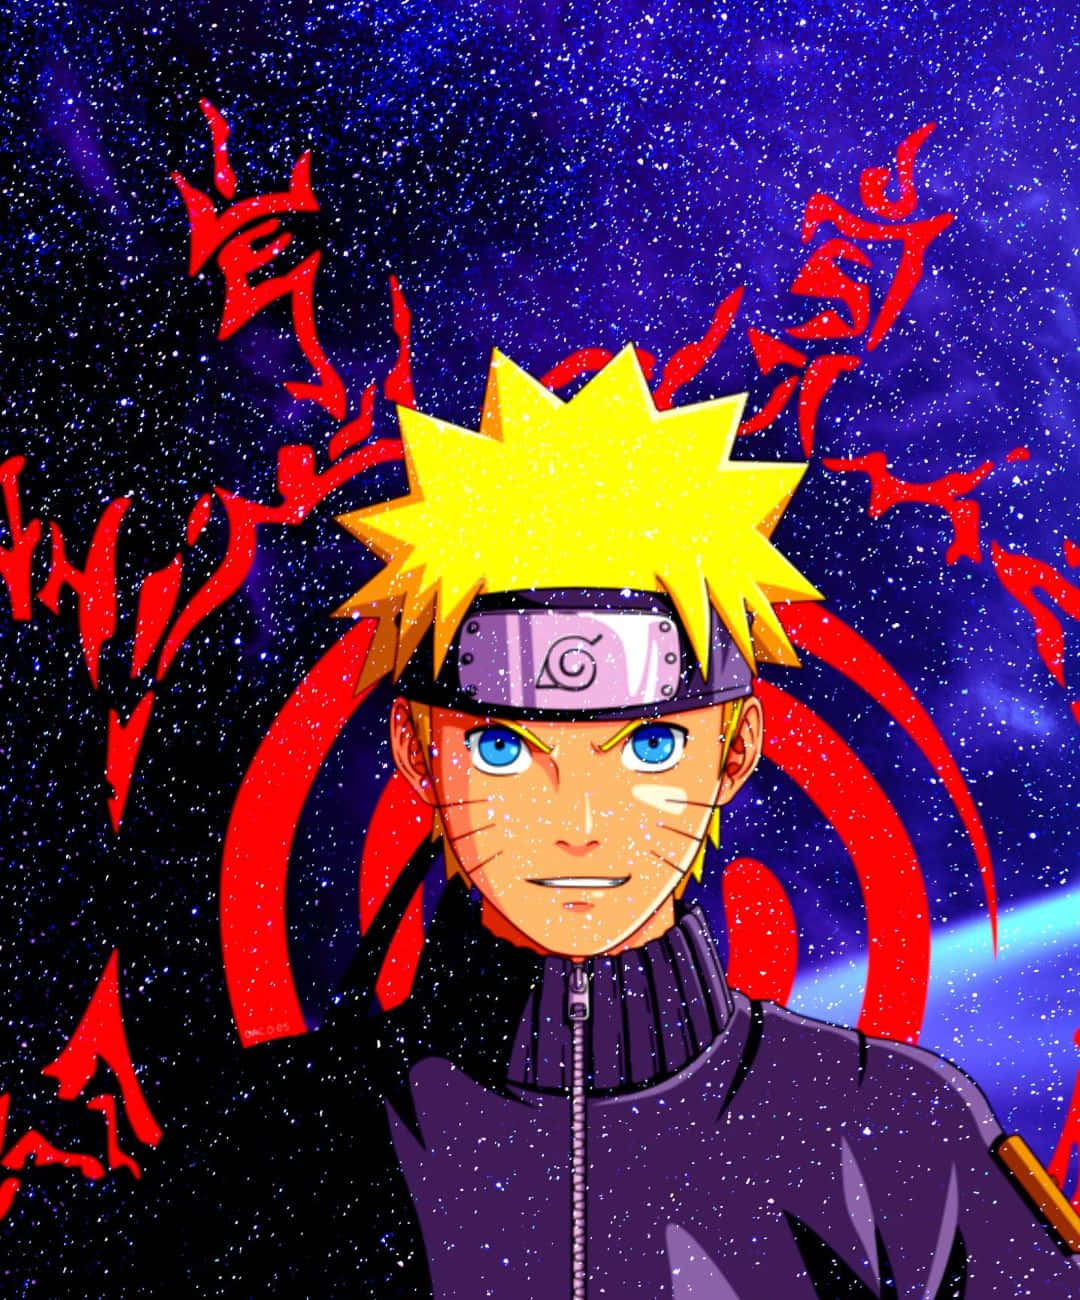 Narutobakgrunder - Naruto Bakgrunder